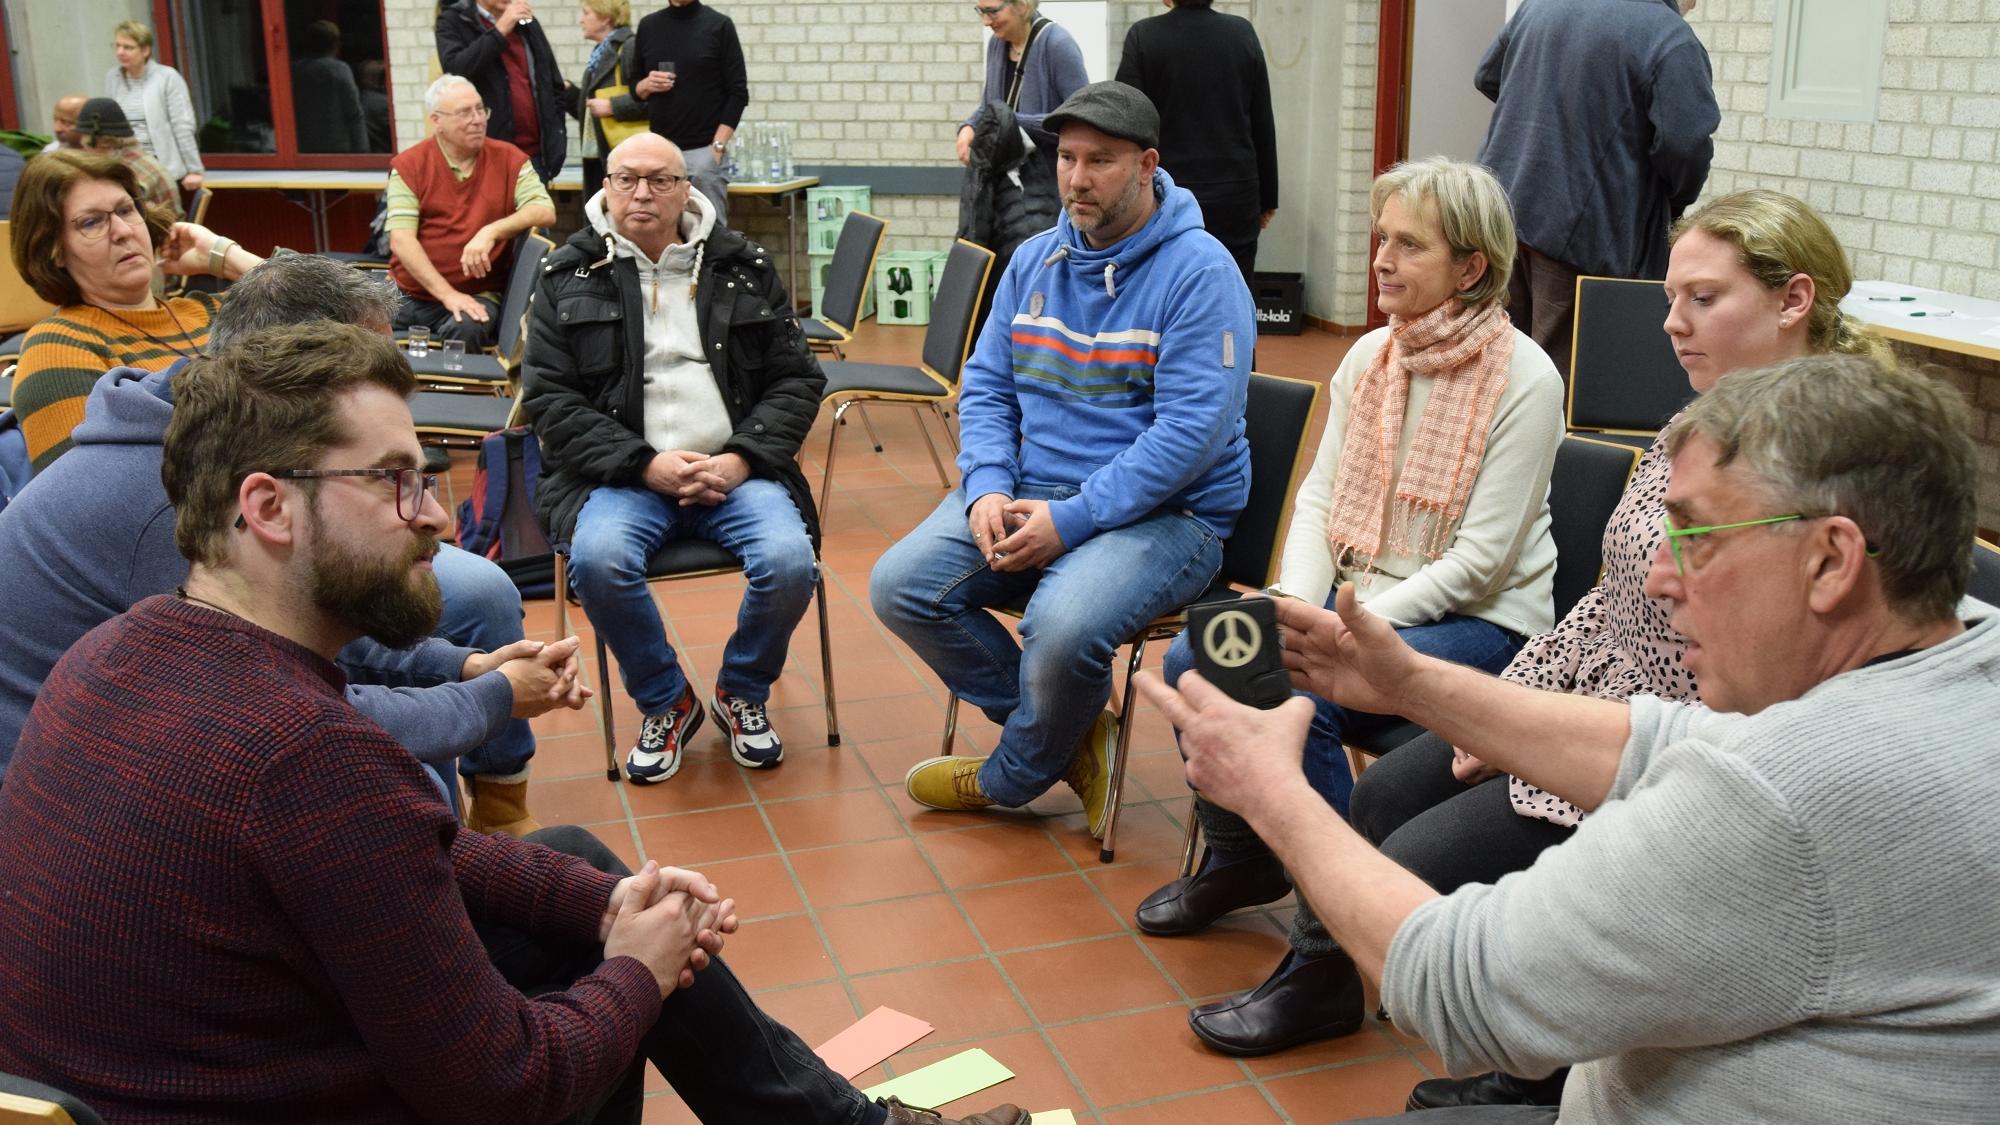 Am 27. März geht es los mit den Fokusgruppen. Schon beim Auftakt von '#Mitten in Herzogenrath' wurde munter diskutiert.